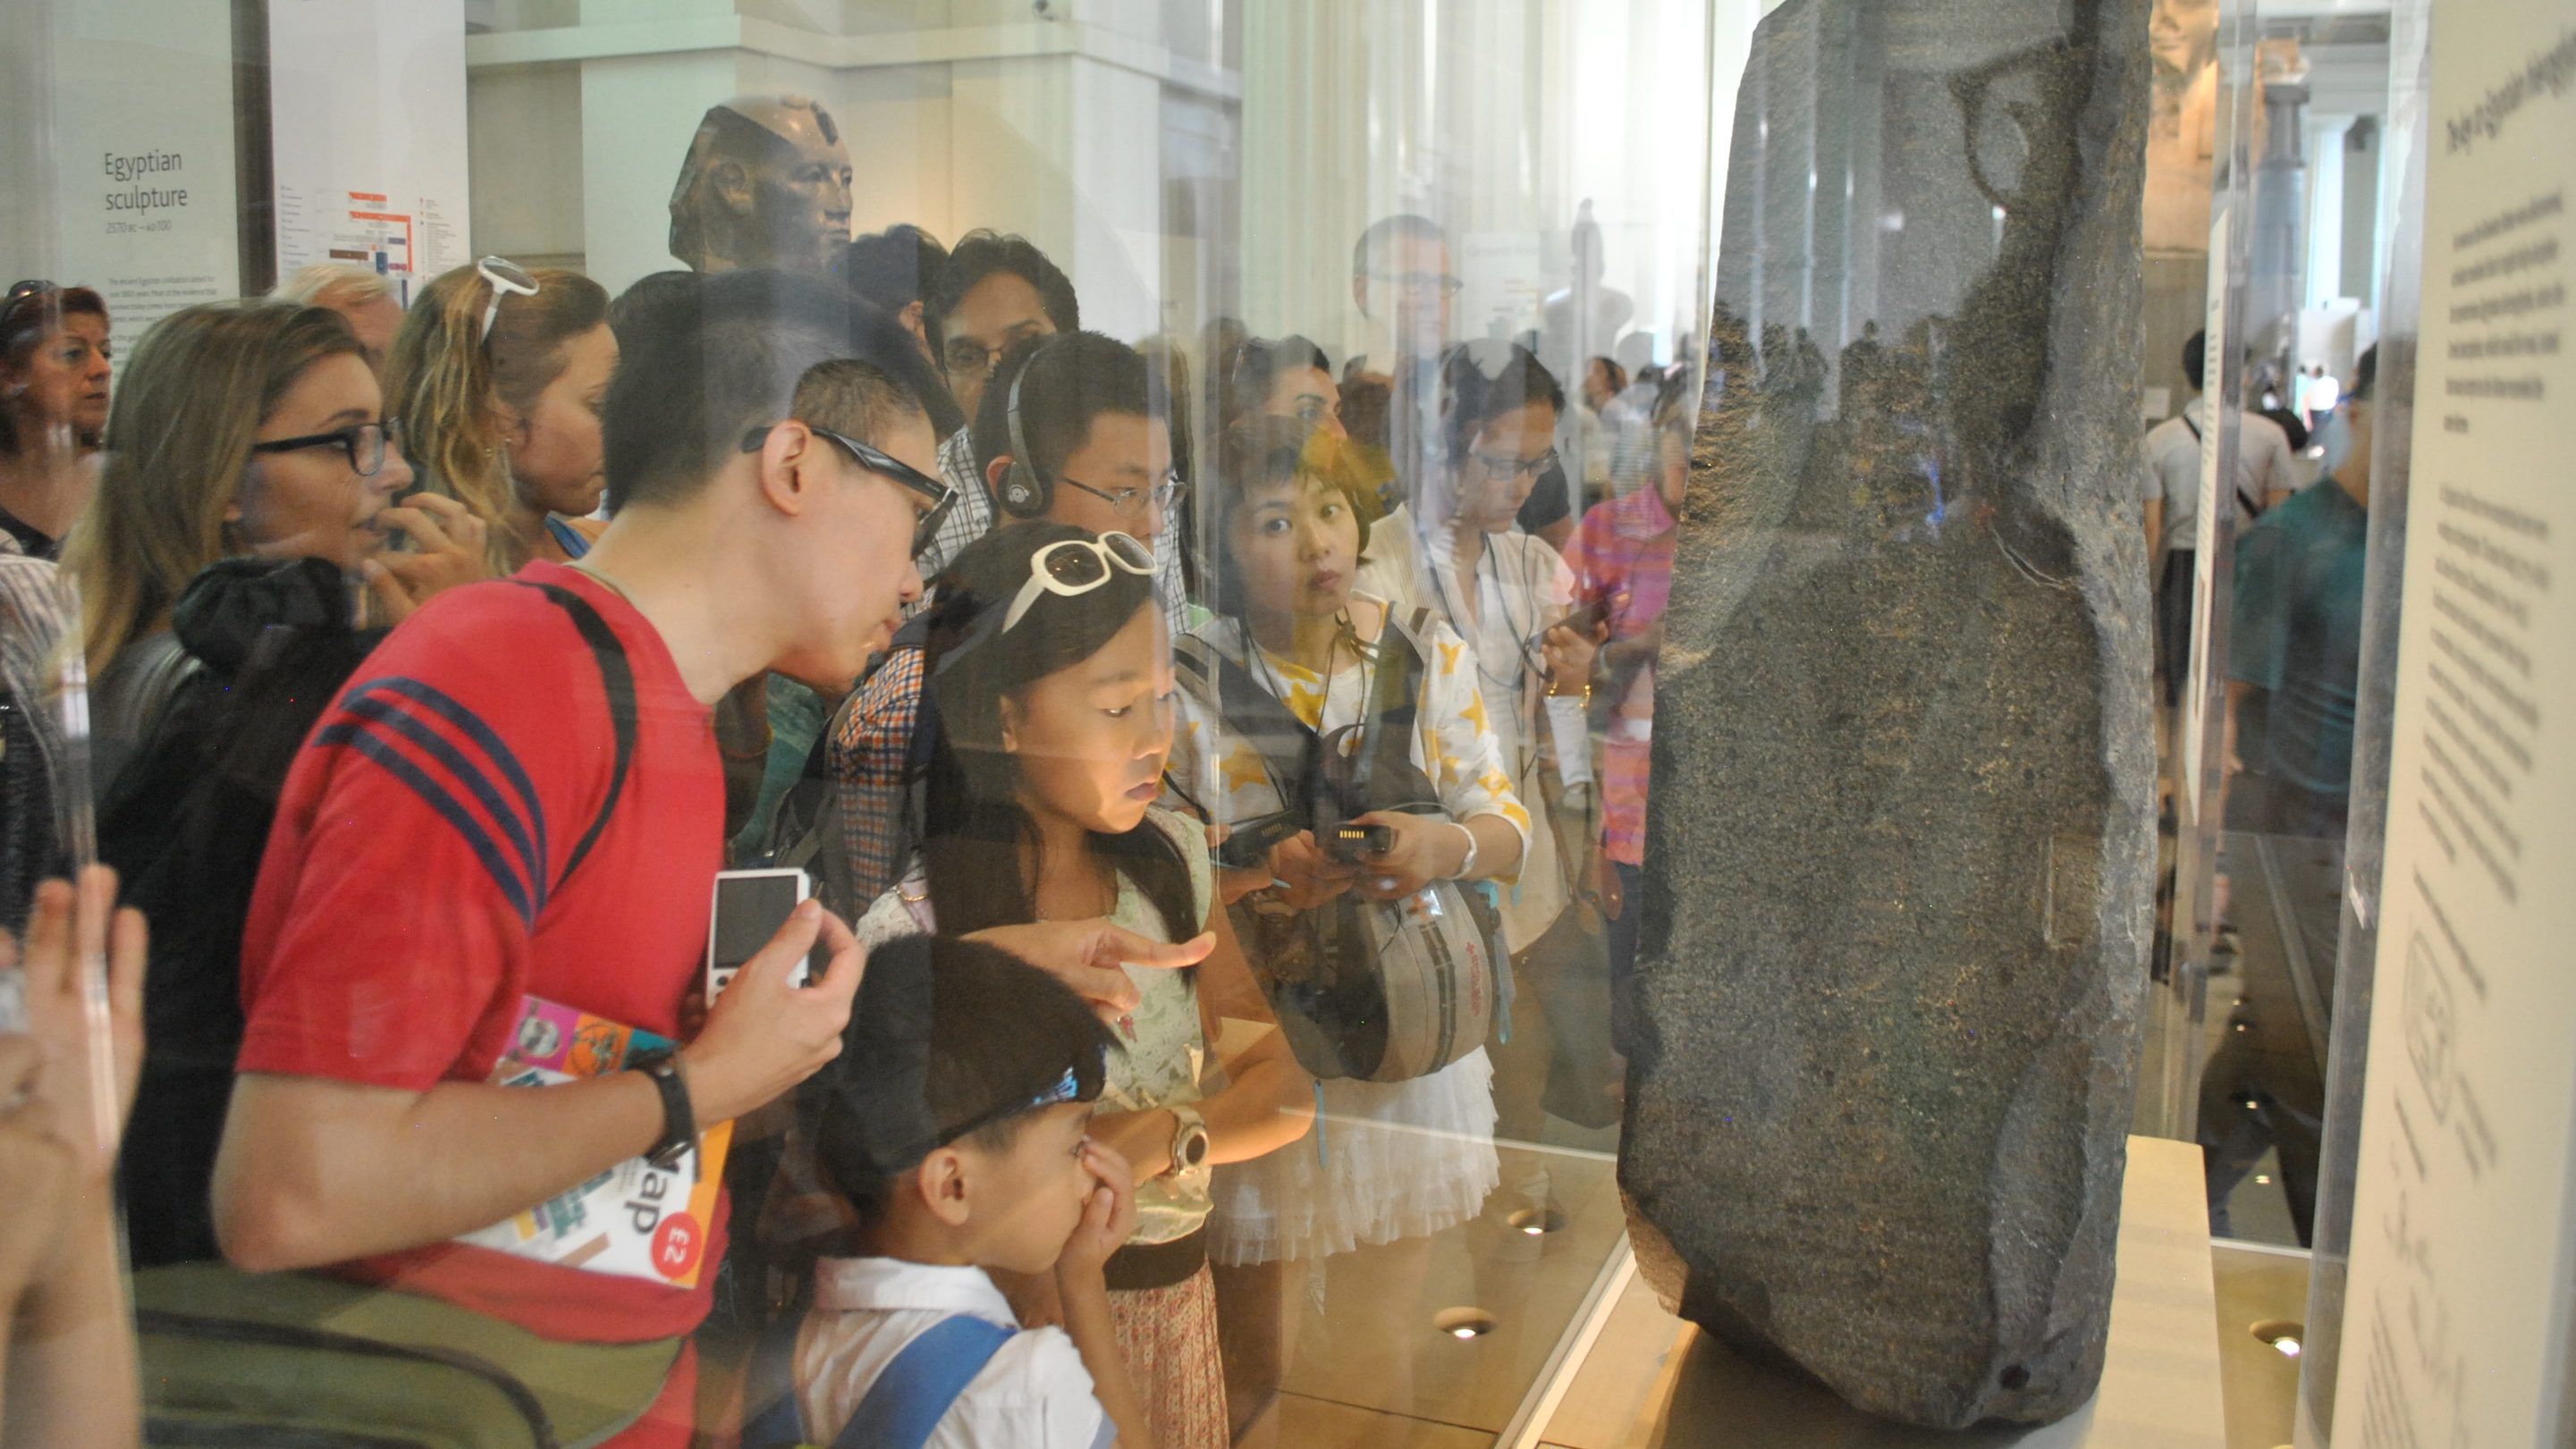 Egyptians Demand Return of Rosetta Stone From British Museum